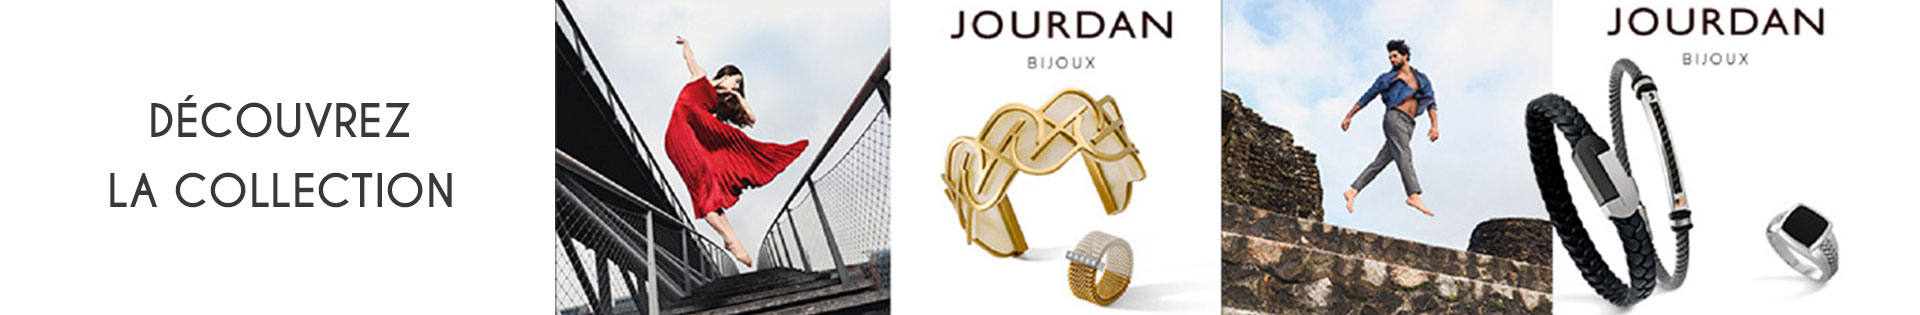 Marques de bijoux - Jourdan Bijoux - Argent